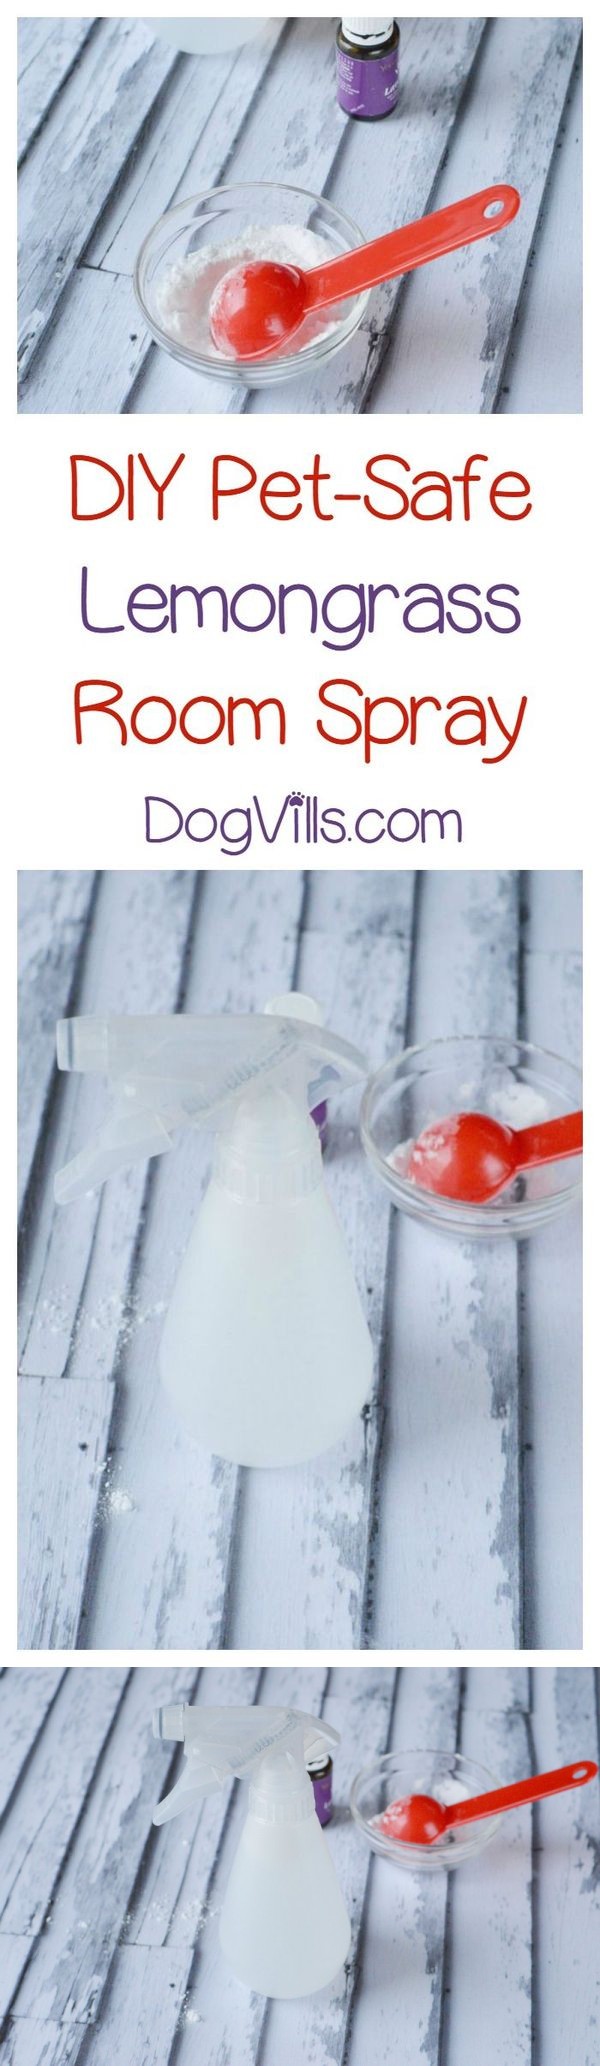 DIY Pet-Safe Essential Oil Deodorizer Spray Recipe for an Odor-Free Home